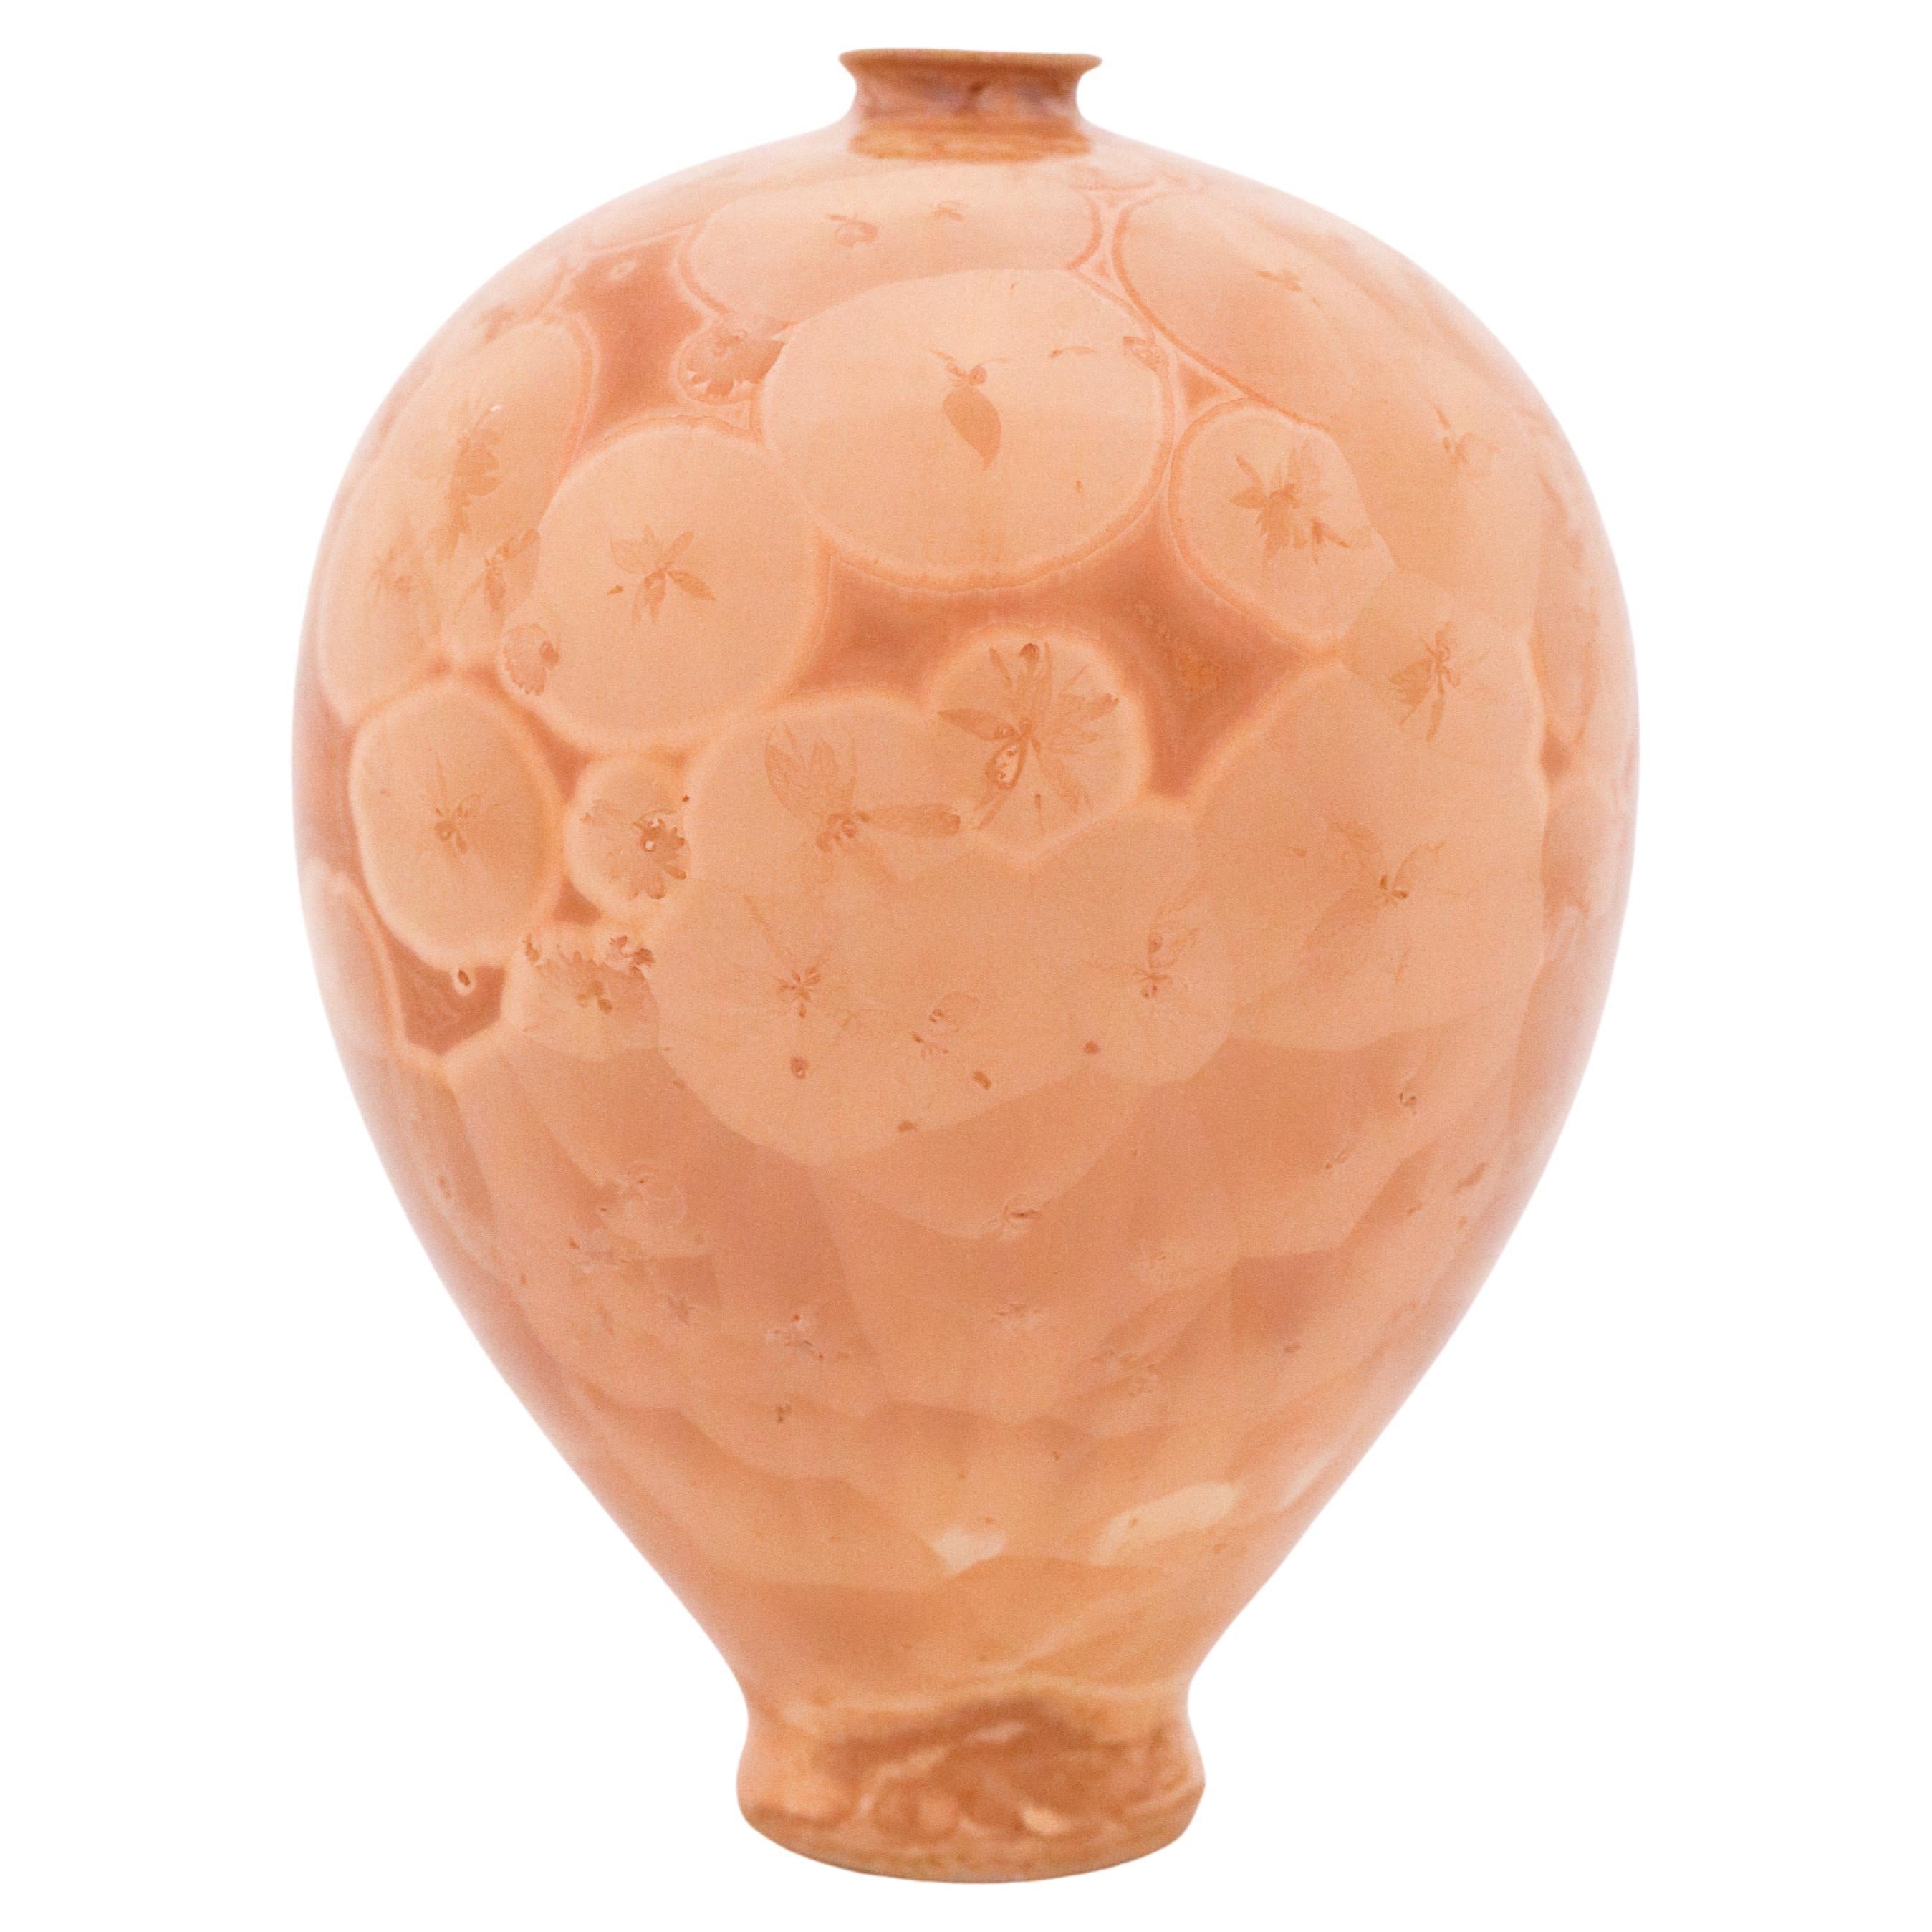 Isak Isaksson Vase, Beige Crystalline Glaze, Contemporary Swedish Ceramicist